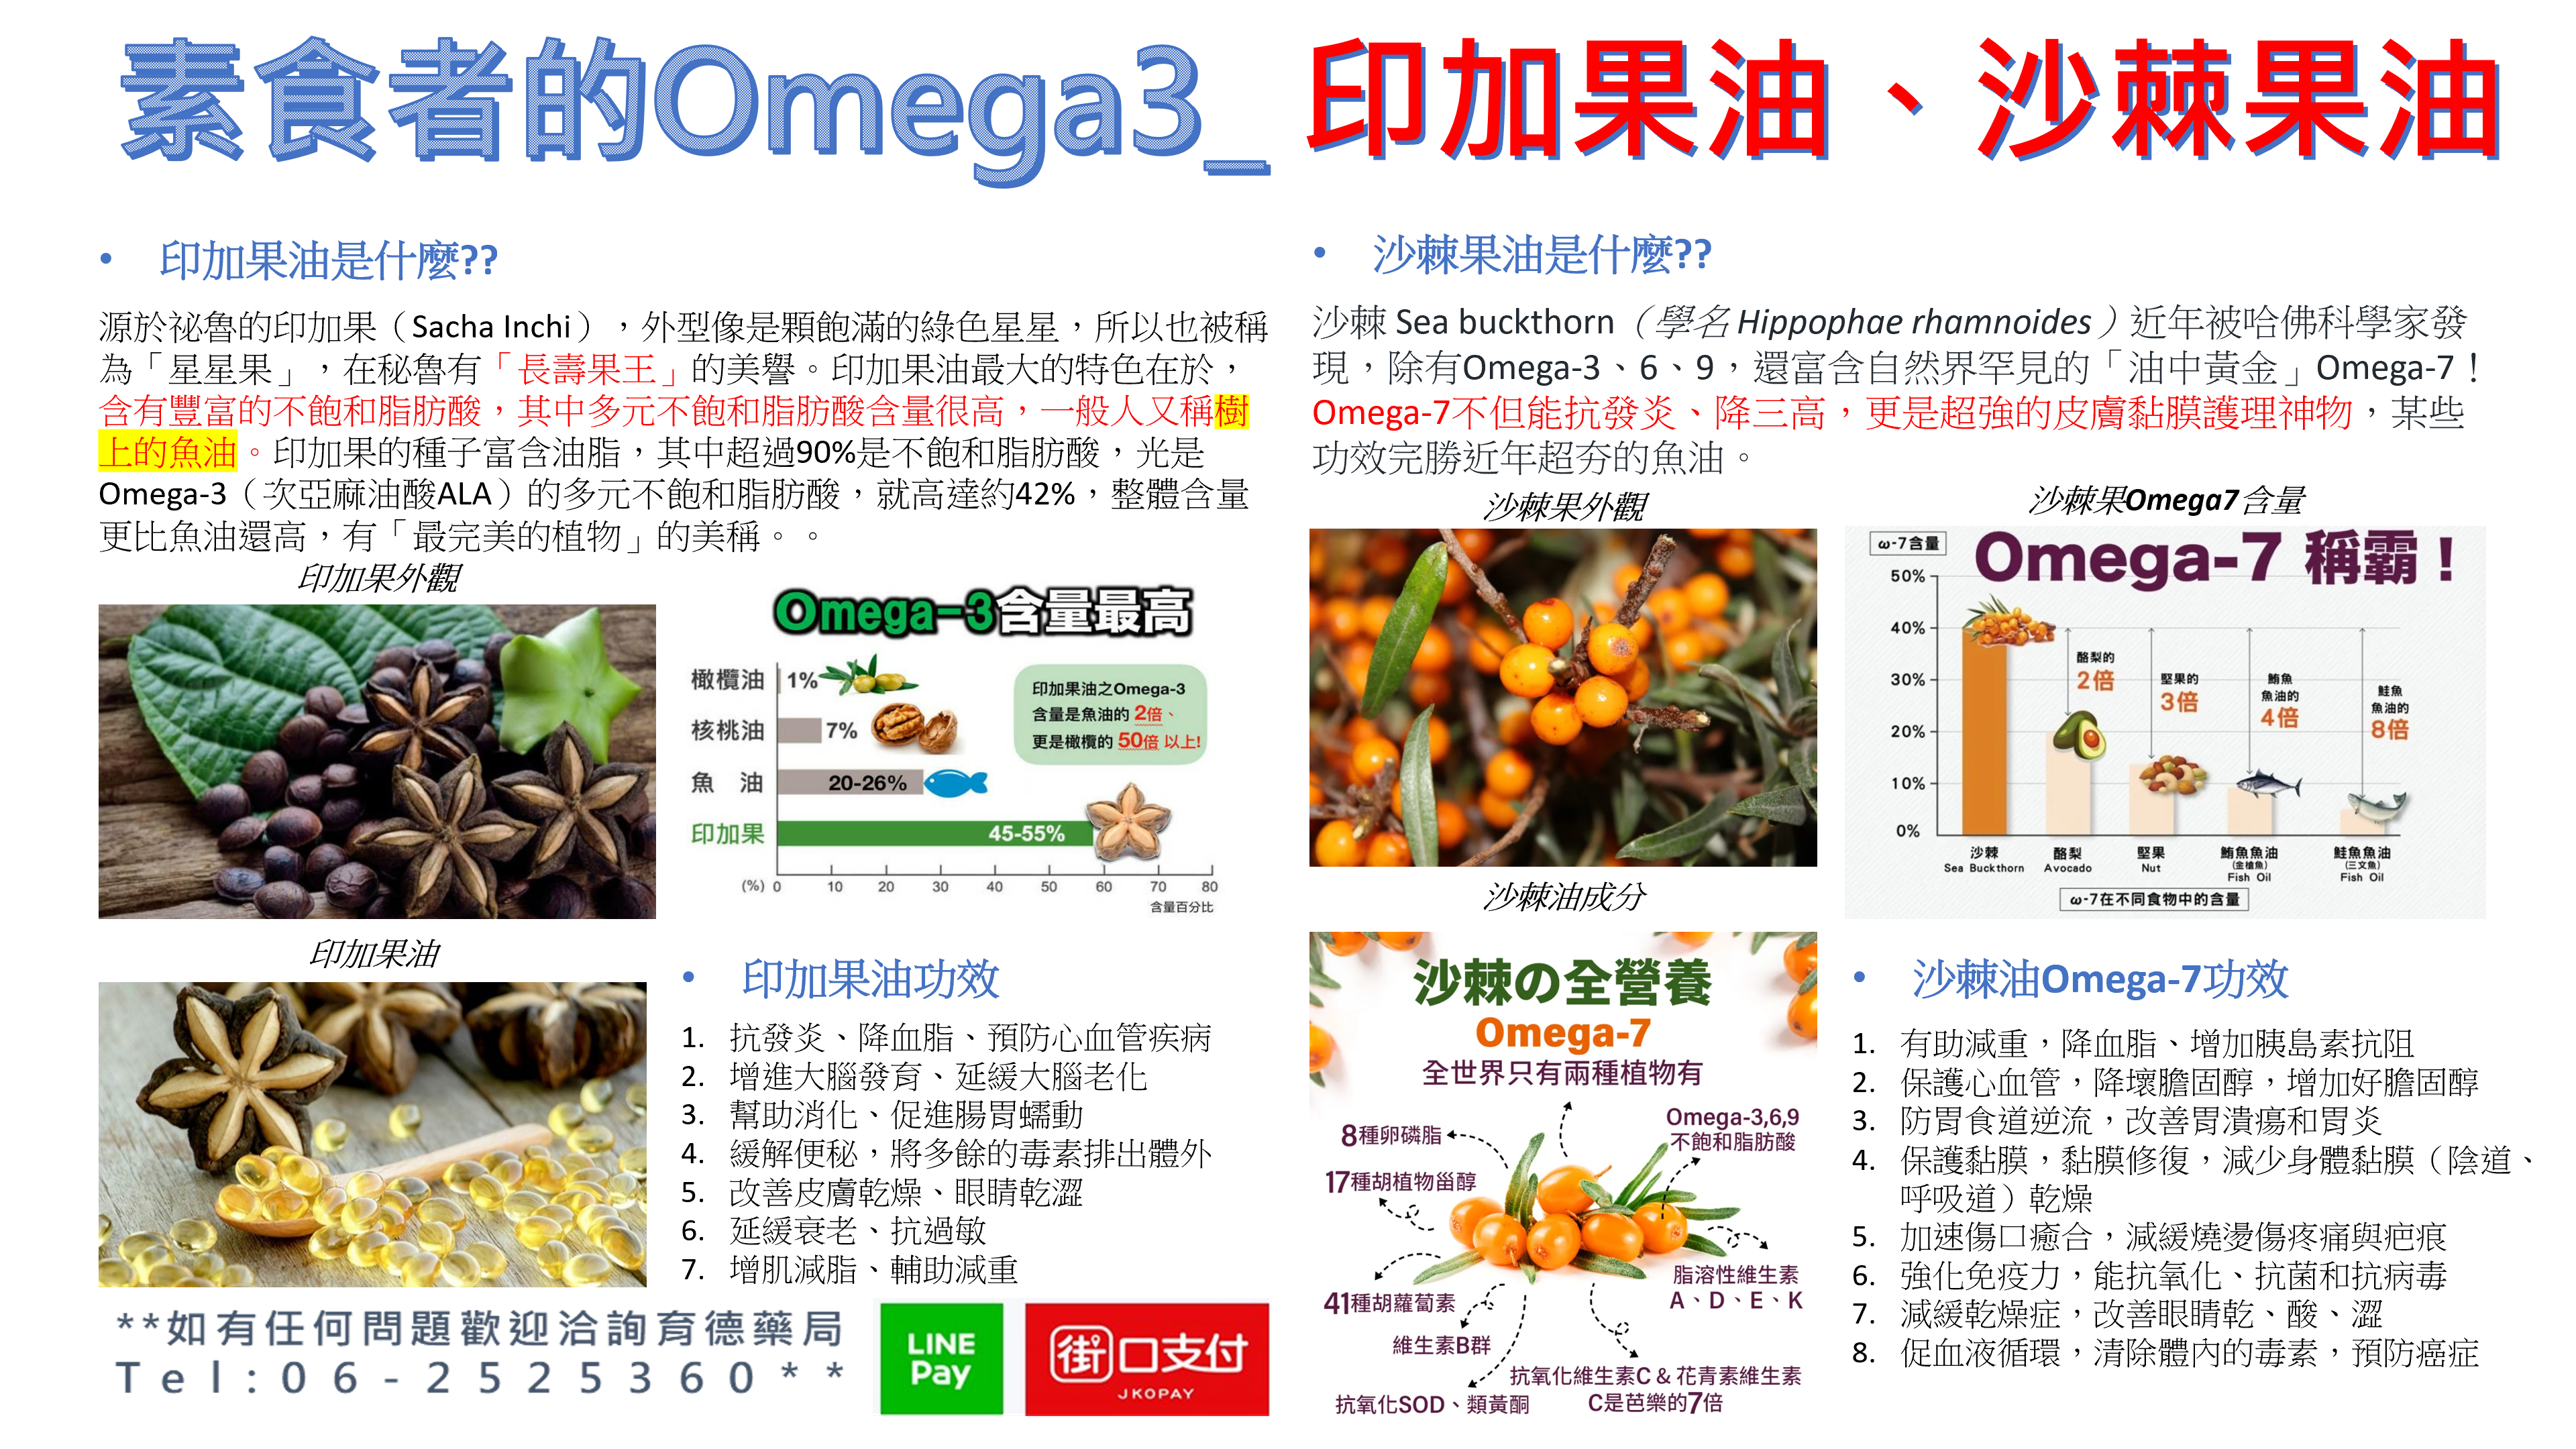 藥師愛分享系列(2)_素食者的Omega3